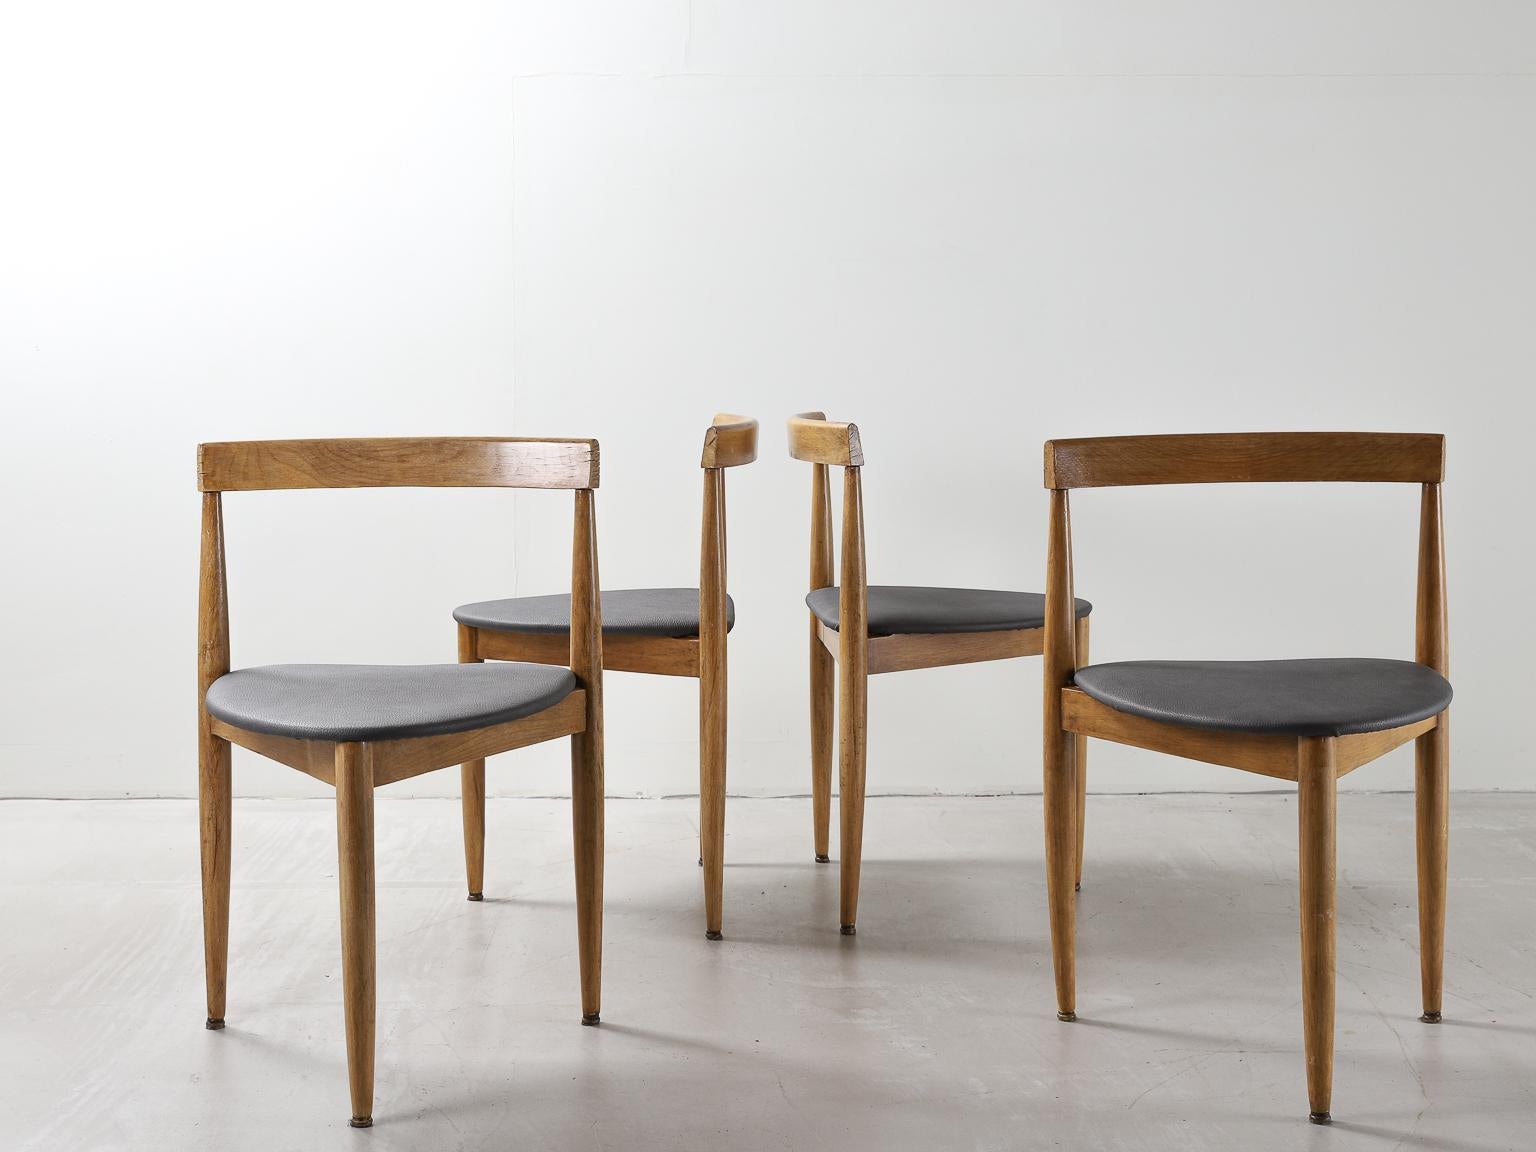 Un ensemble de quatre chaises d'appoint ou de salle à manger en bois et en cuir, conçu et fabriqué au Danemark par Hans Olsen pour le fabricant Frem Røjle. 

Le cuir a été retapissé en cuir vert. 

Hans Olsen (1919-1992) était un designer de meubles